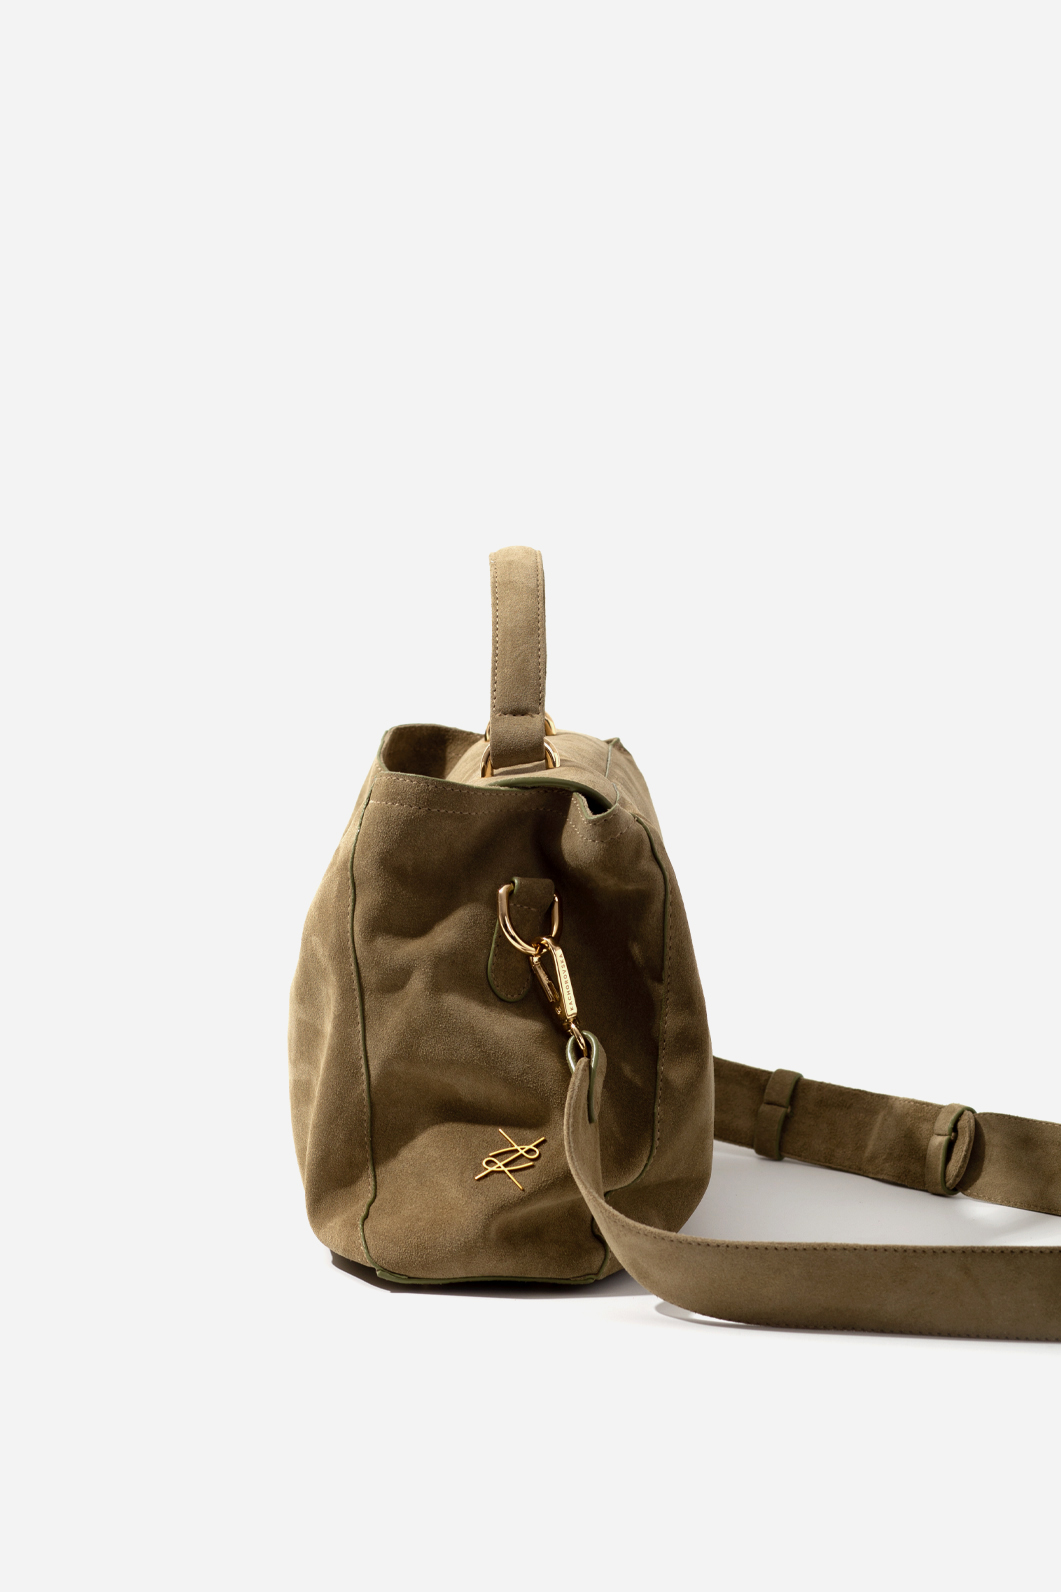 ERNA SOFT olive suede leather bag /gold/